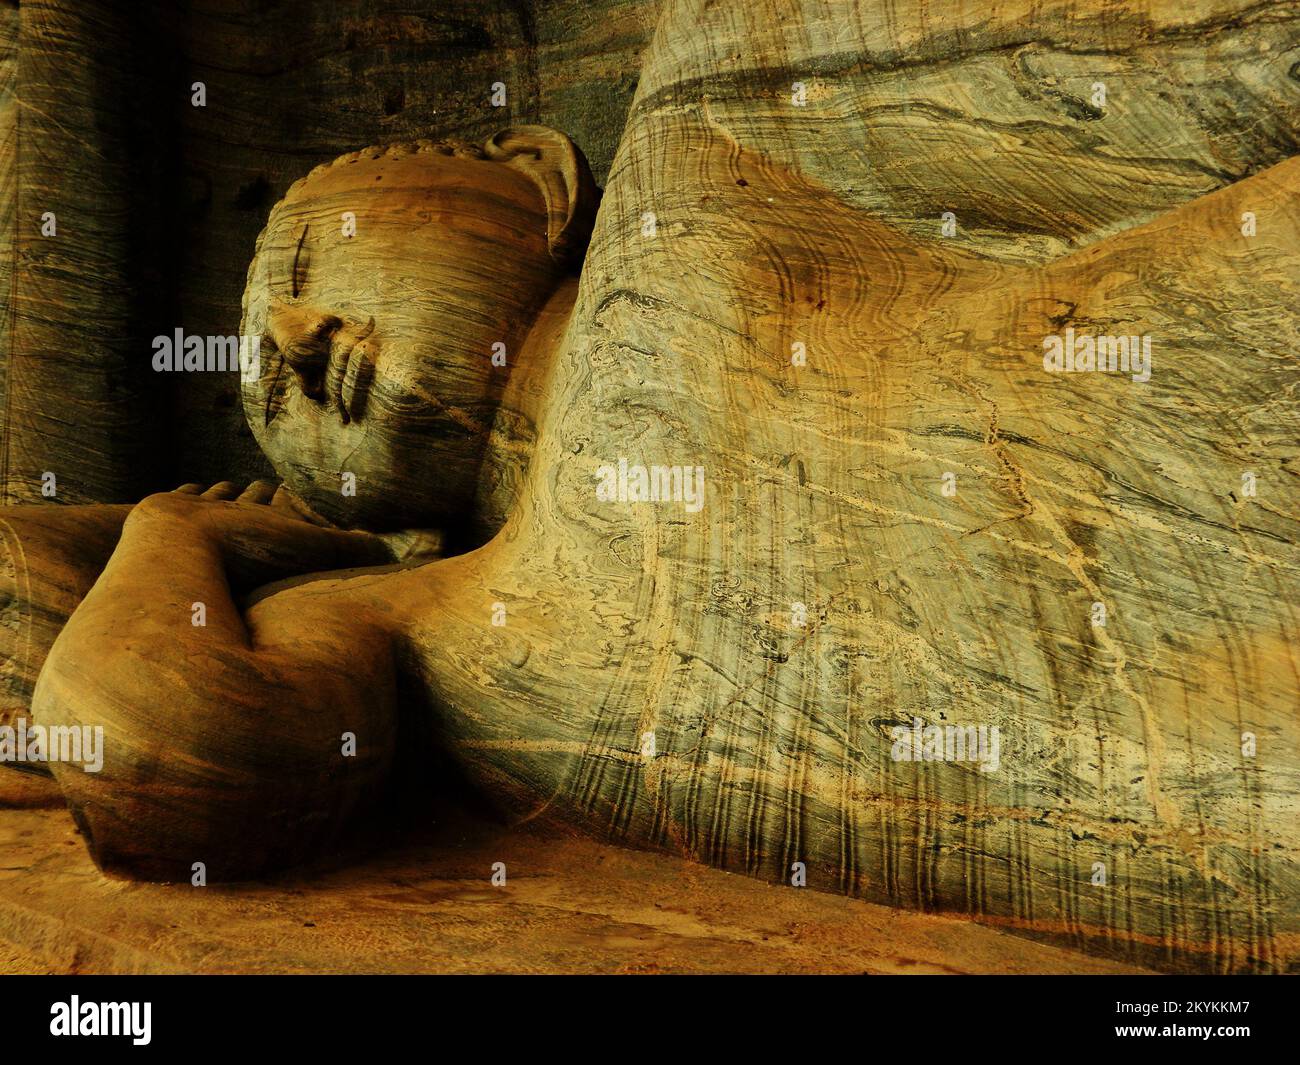 Galviharaya, Utharamaya, Polonnaruwa est célèbre pour ses trois statues de Bouddha, sculptées dans un rocher de gneiss de granit. Trois portraits de Bouddha, assis, incliné et debout sont vivants comme. Les sculptures smartness peuvent être vues à travers la douce, translucide sivura. Les flottes de la sivura comme les vagues de la mer. Polonnaruwa, Sri Lanka. Banque D'Images